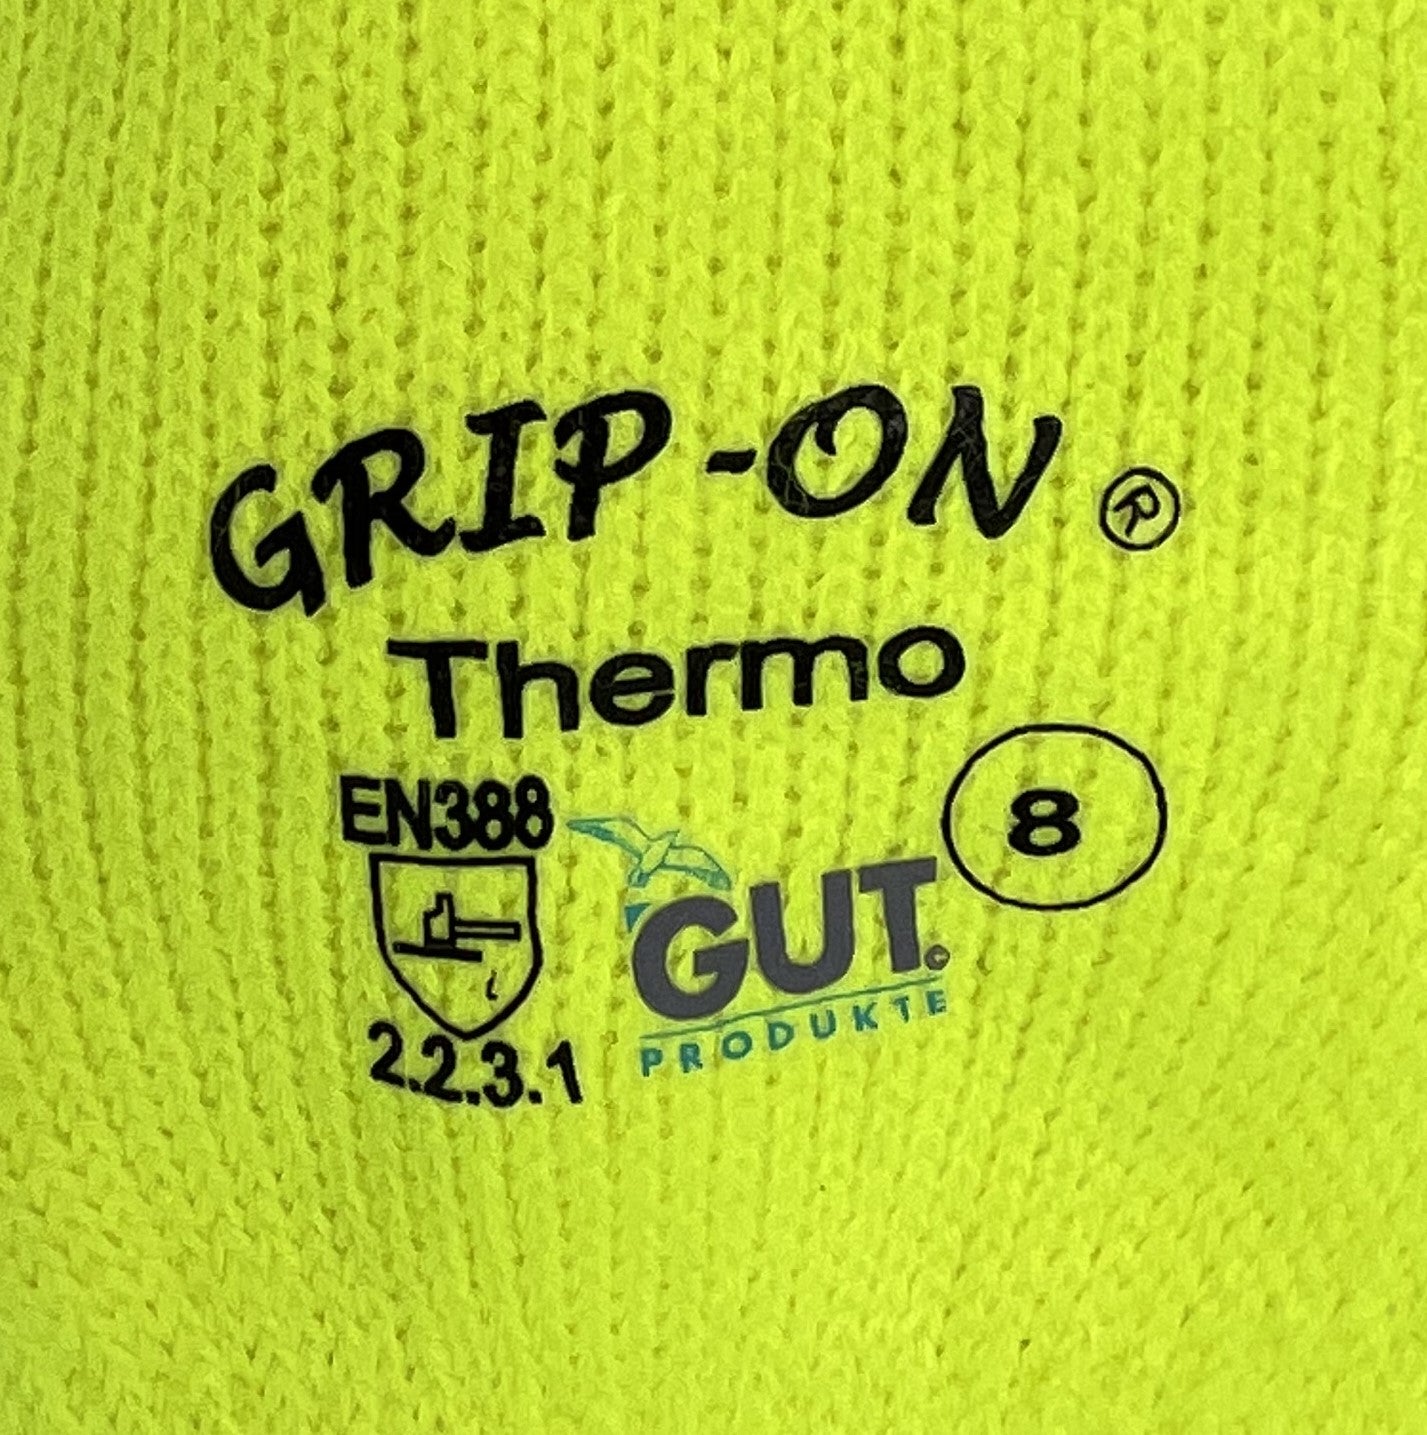 Winterhandschuh GUT GRIP-ON Thermo gelb